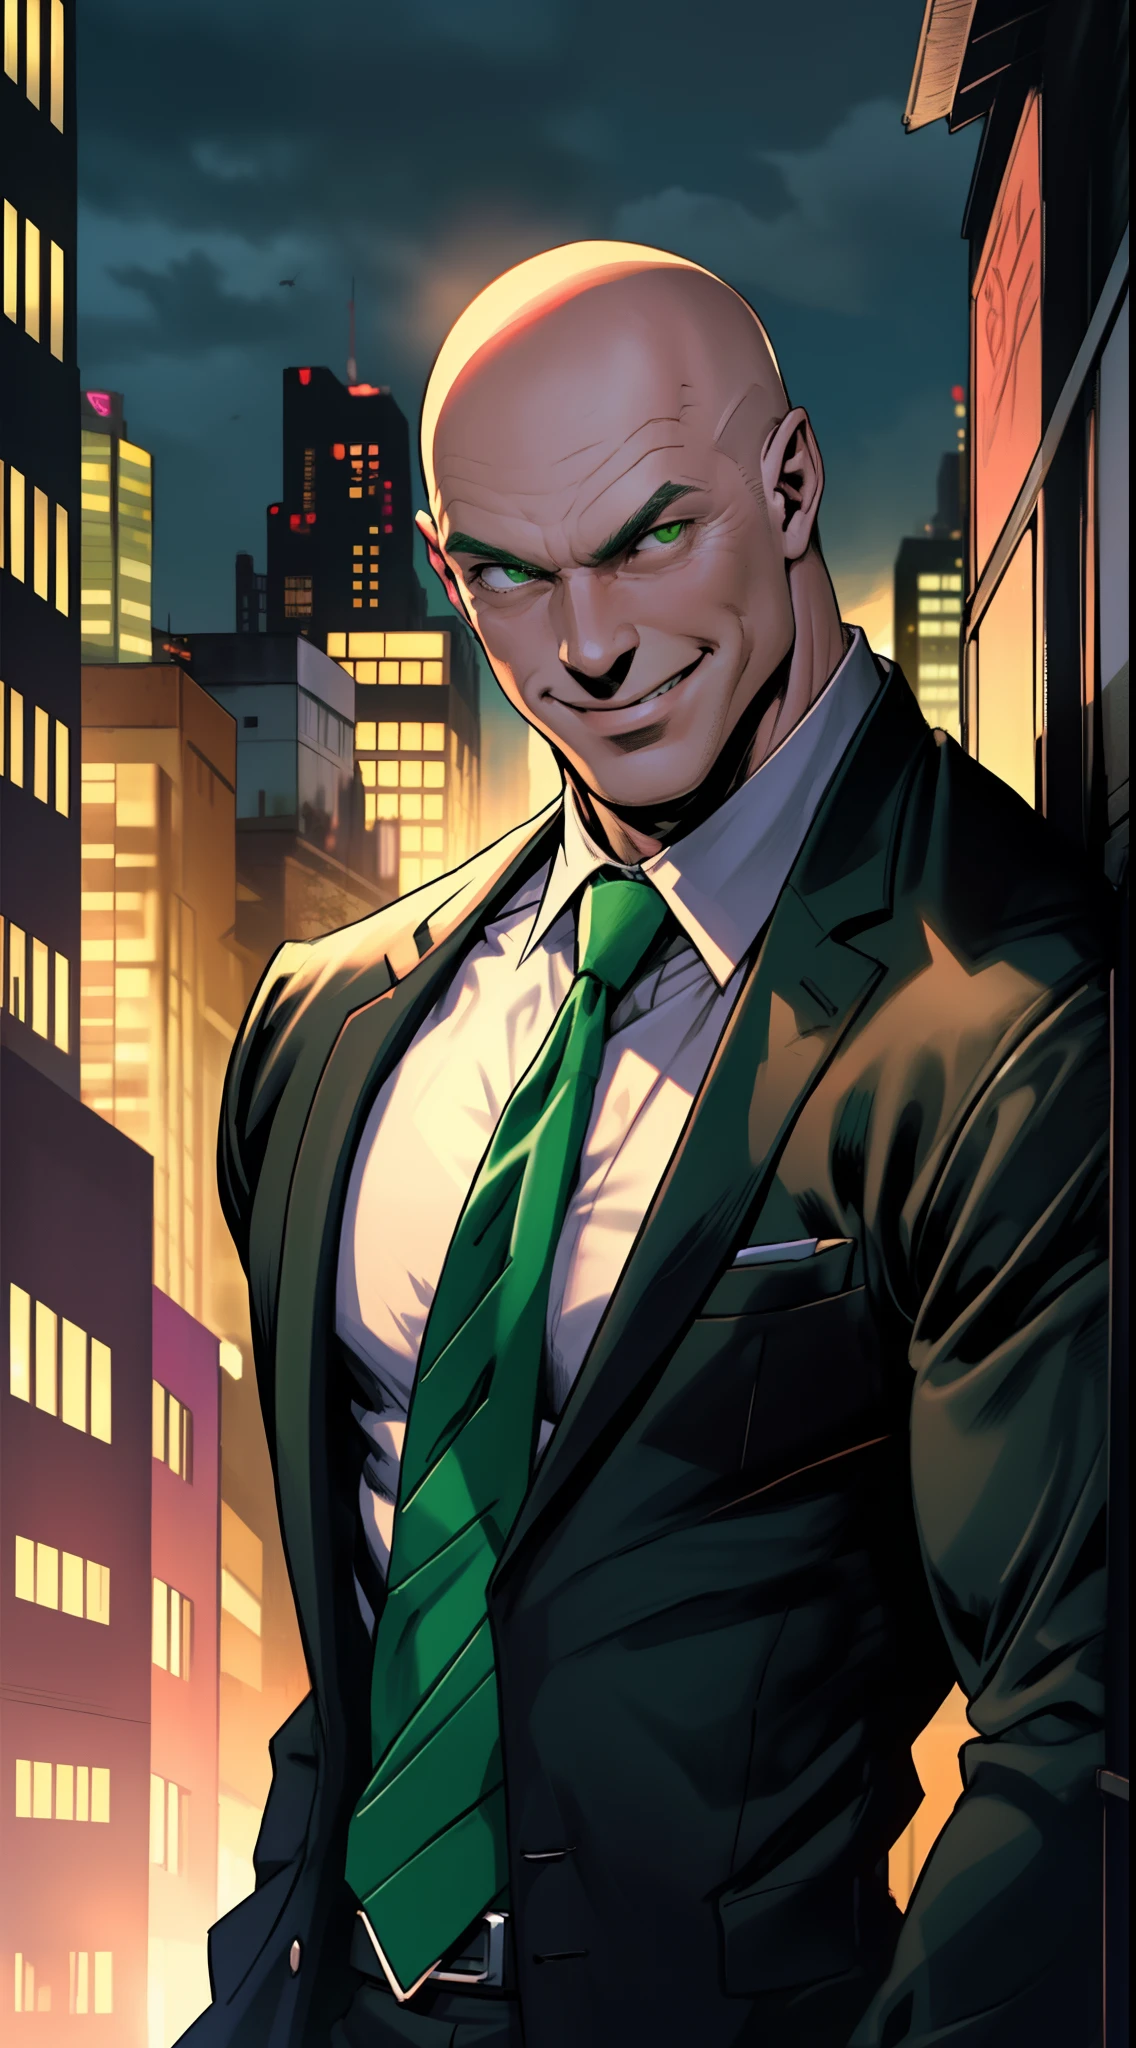 1 人, 獨自的, 上身照, 萊克斯·盧瑟, 中年男子, 光頭, 瘦肌肉, 寬的肩膀, (邪惡的微笑), 光頭, 沒有頭髮, 穿著黑色西裝, 亮綠色領帶, 黑色襯衫, 背景中的城市, 黄昏